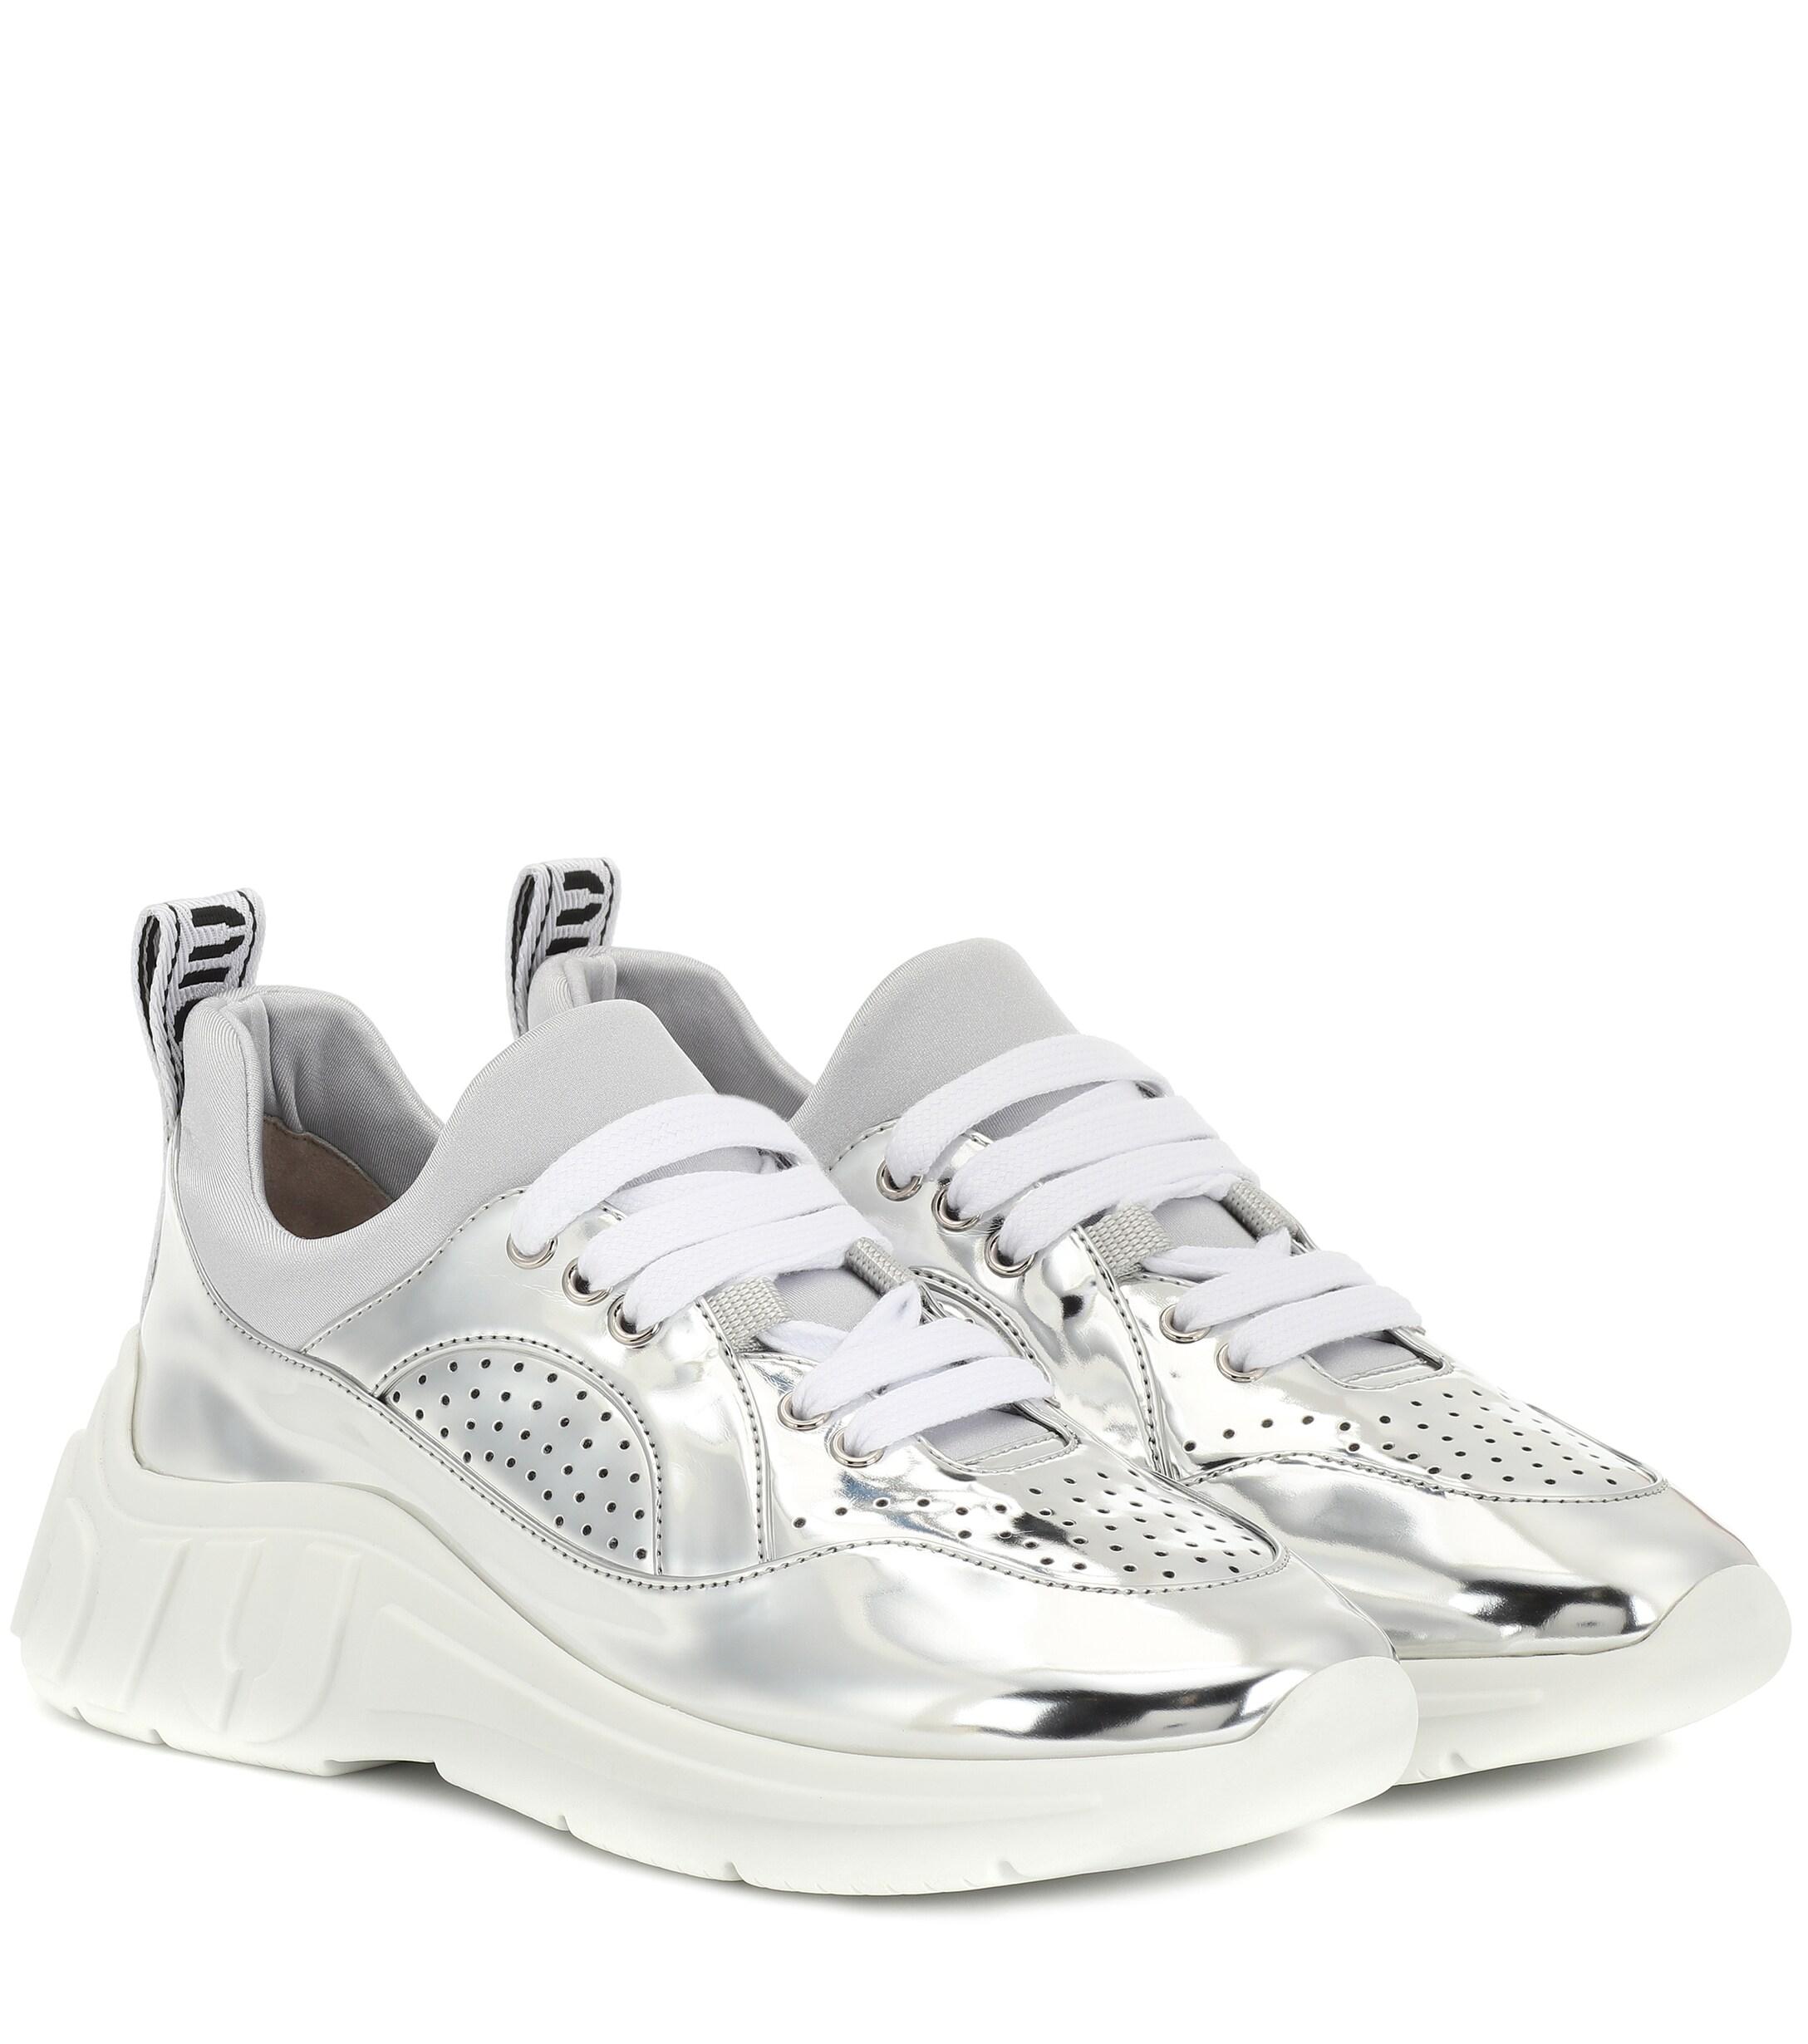 Miu Miu Metallic Sneakers in Silver (White) - Lyst